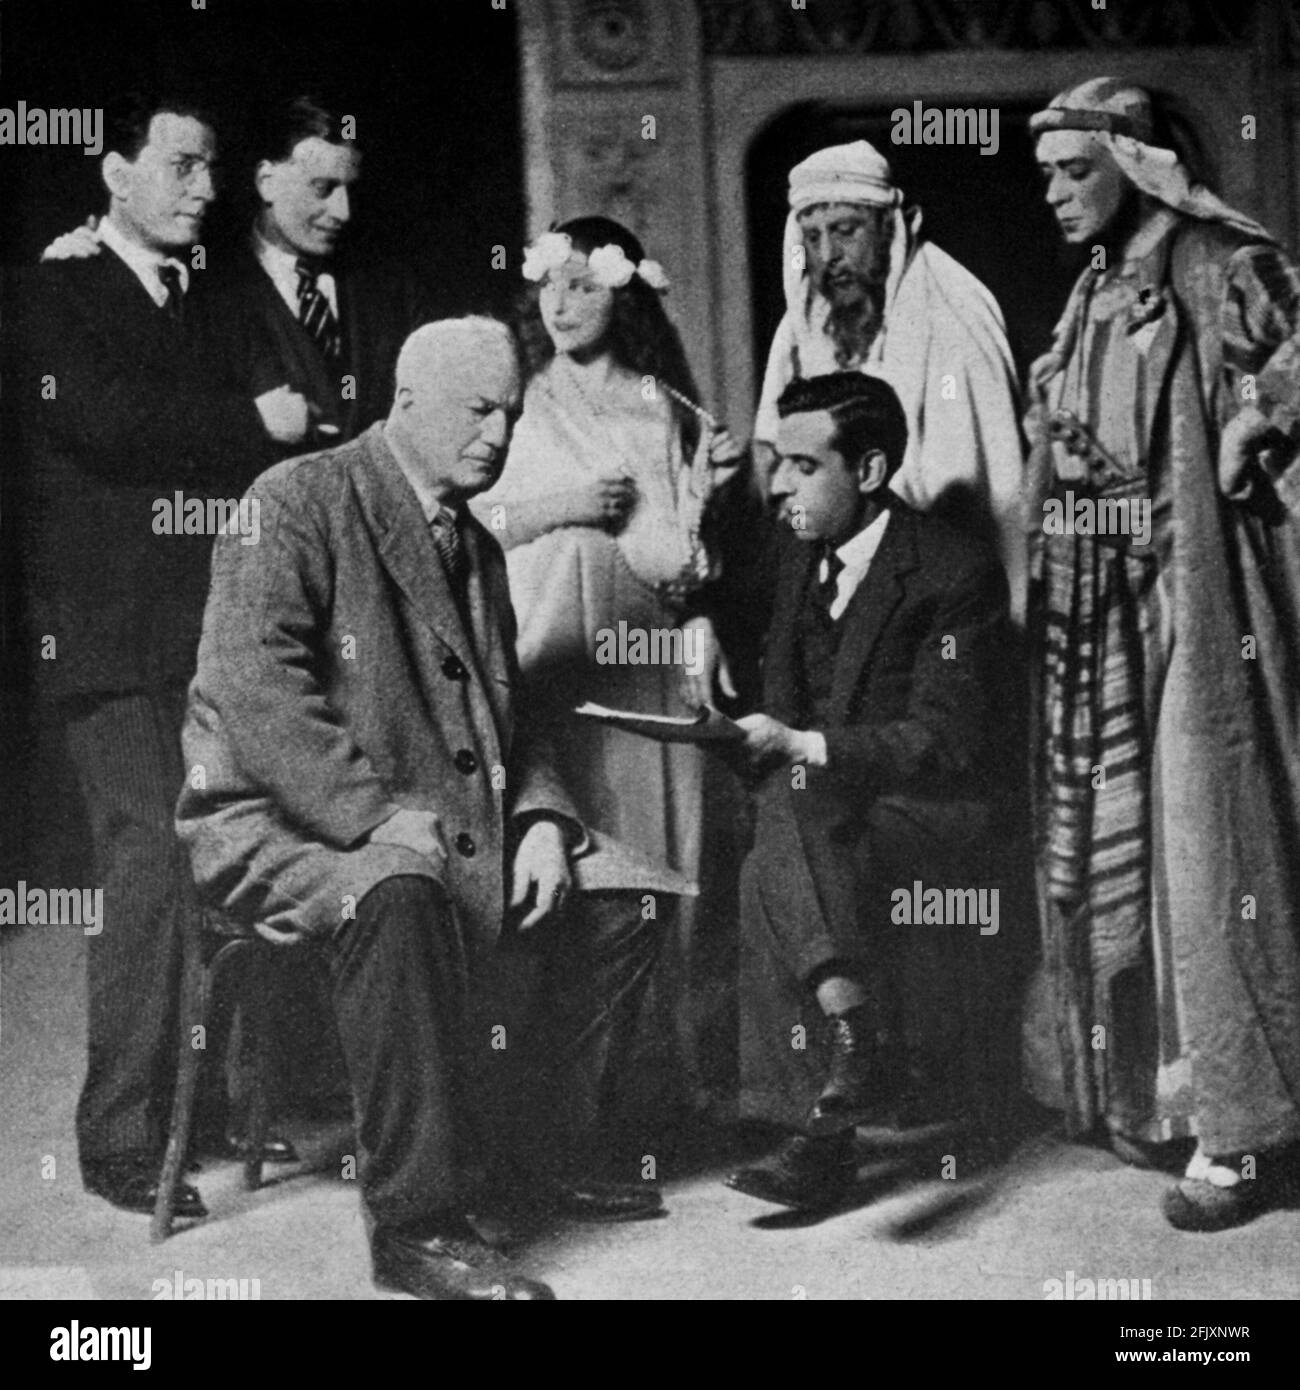 1925 , Mailand , ITALIEN : der italienische Schriftsteller und Dramatiker GIUSEPPE ANTONIO BORGESE ( 1882 - 1952 ). Porträtiert während der rehersalen Arbeit für sein Stück LAZZARO . Von links: GIOVACCHINO FORZANO (Musikkomponist, Librettist und Regisseur), SANDRO SALVINI (Schauspieler), GUSTAVO SALVINI (Schauspieler), G.A. BORGESE (Autor) und einige Schauspieler. - SCRITTORE - LETTERATO - SAGGISTA - LETTERATURA - LITERATUR - DRAMMATURGO - COMMEDIOGRAFO - TEATRO - THEATER - BEWEISEN TEATRALI ---- ARCHIVIO GBB Stockfoto